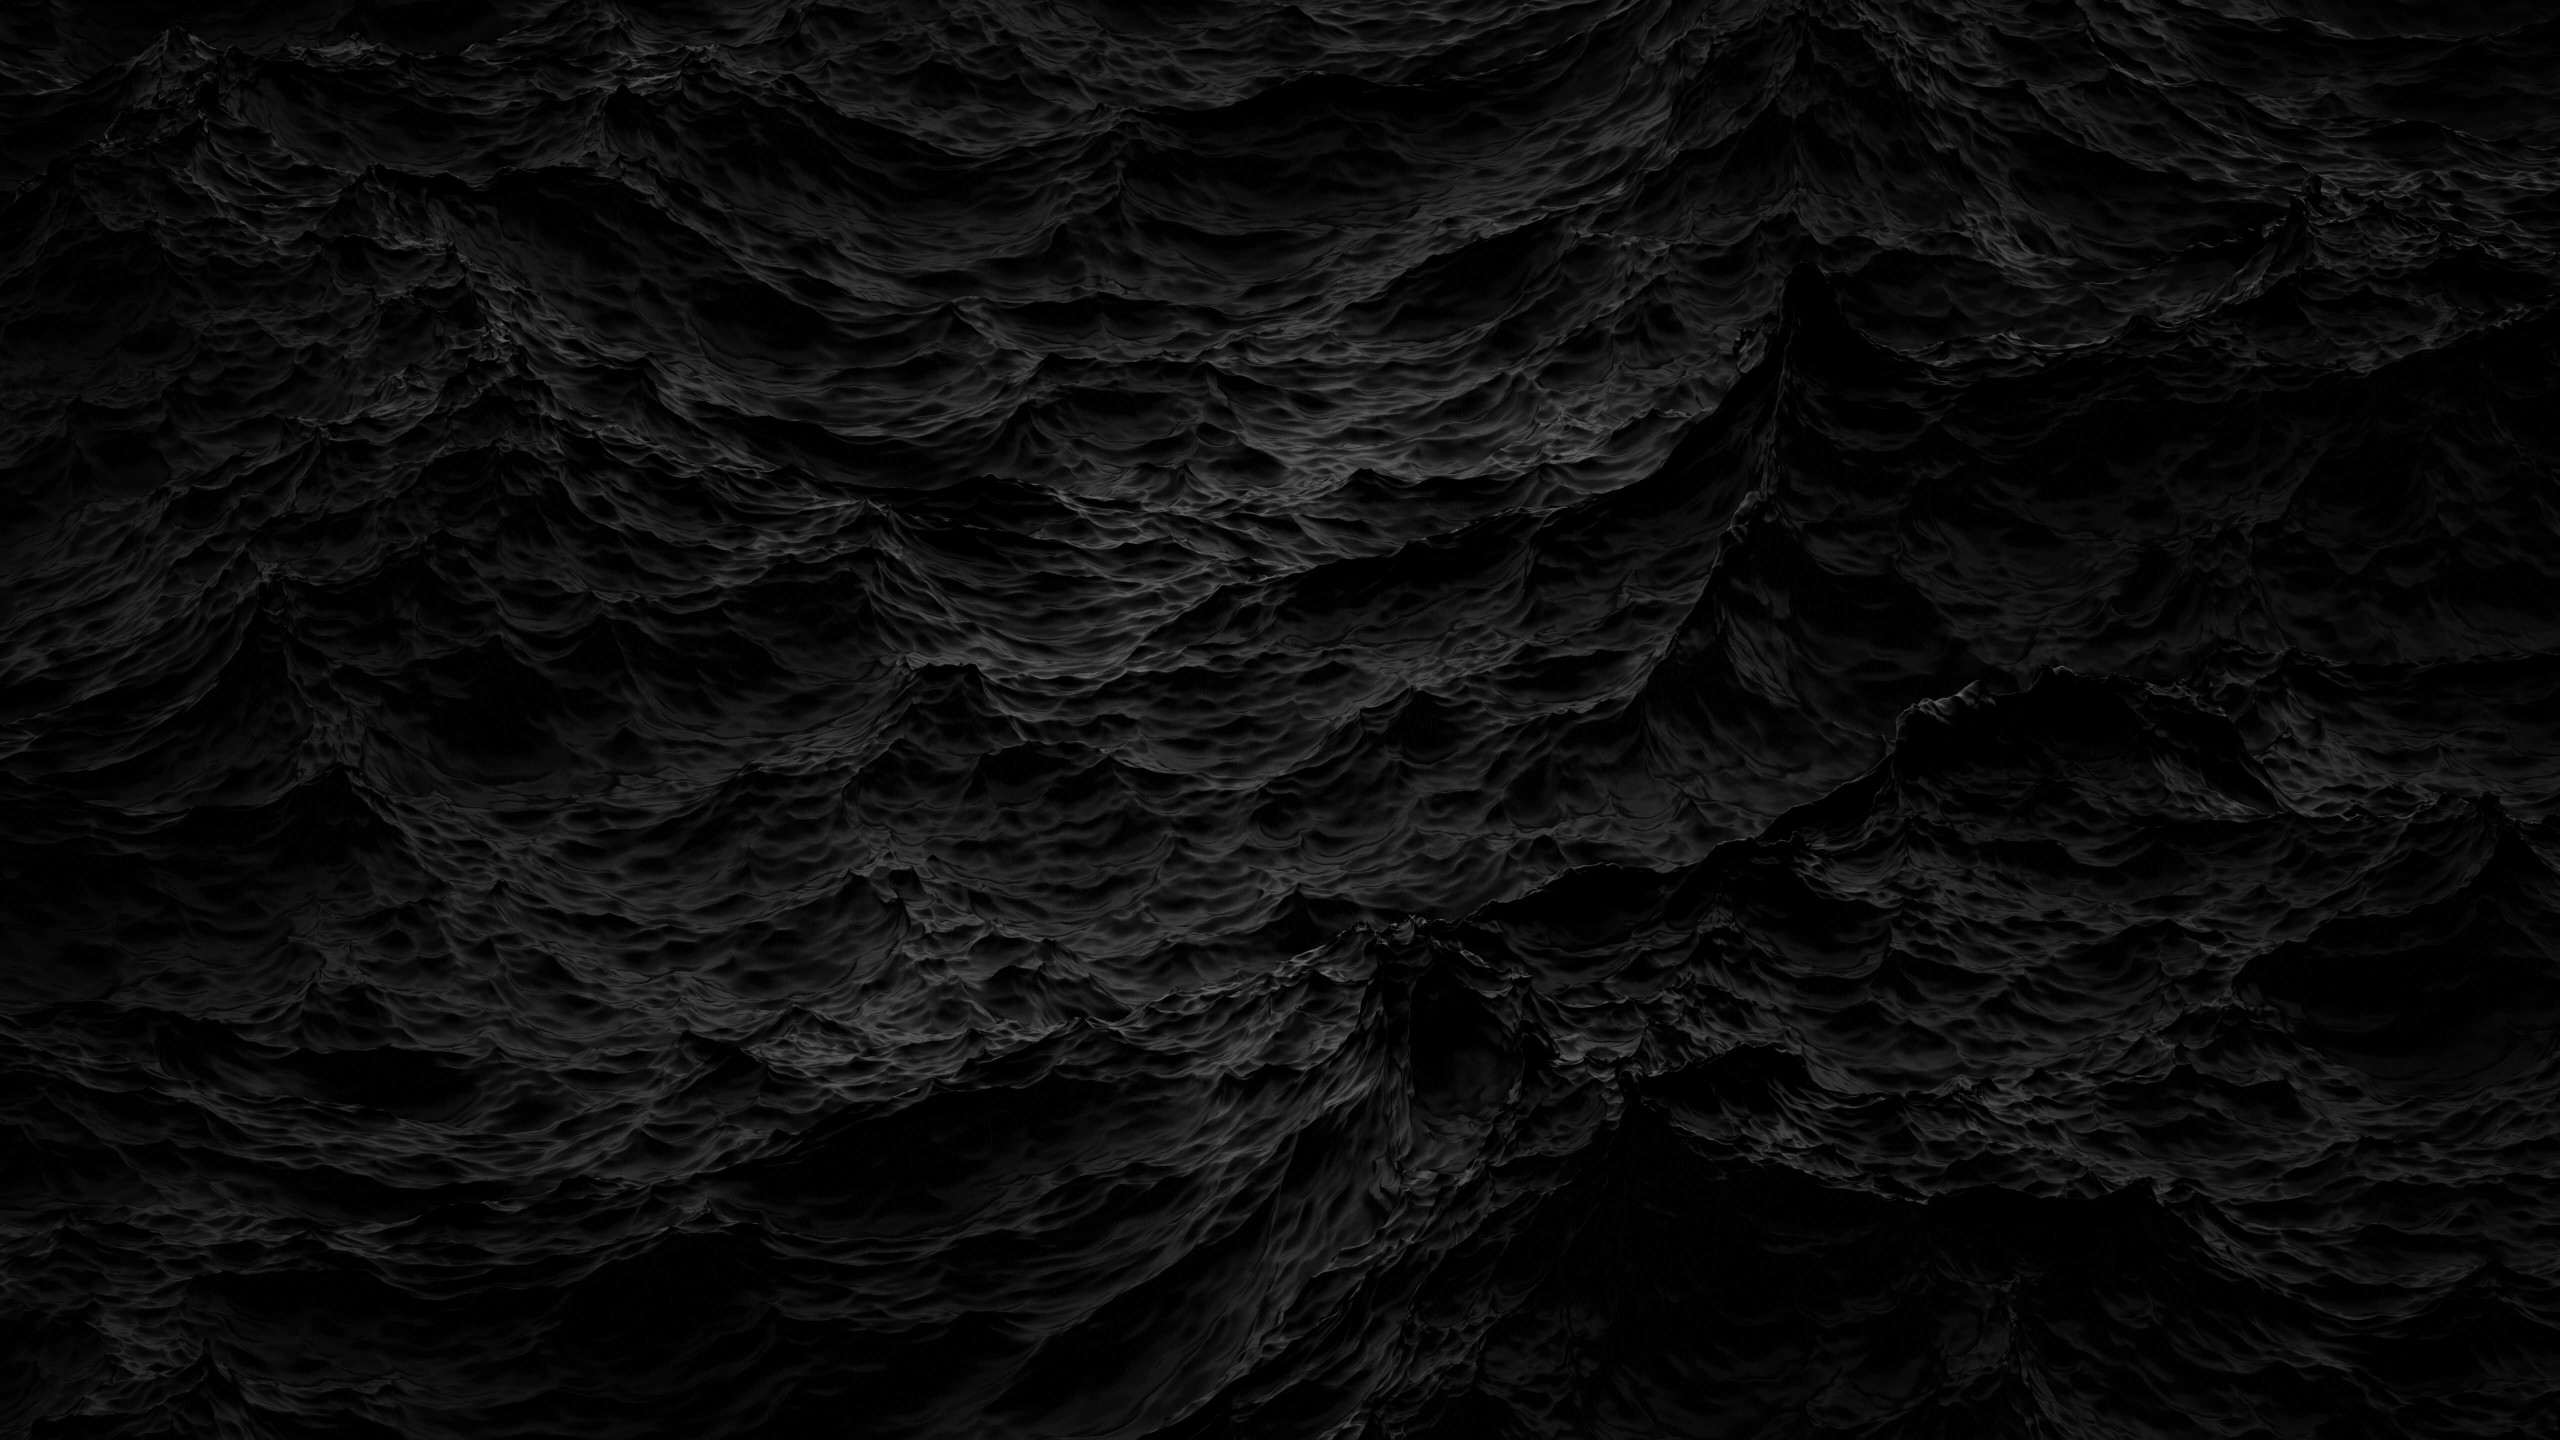 Black Waves Wallpaper for Social Media YouTube Channel Art